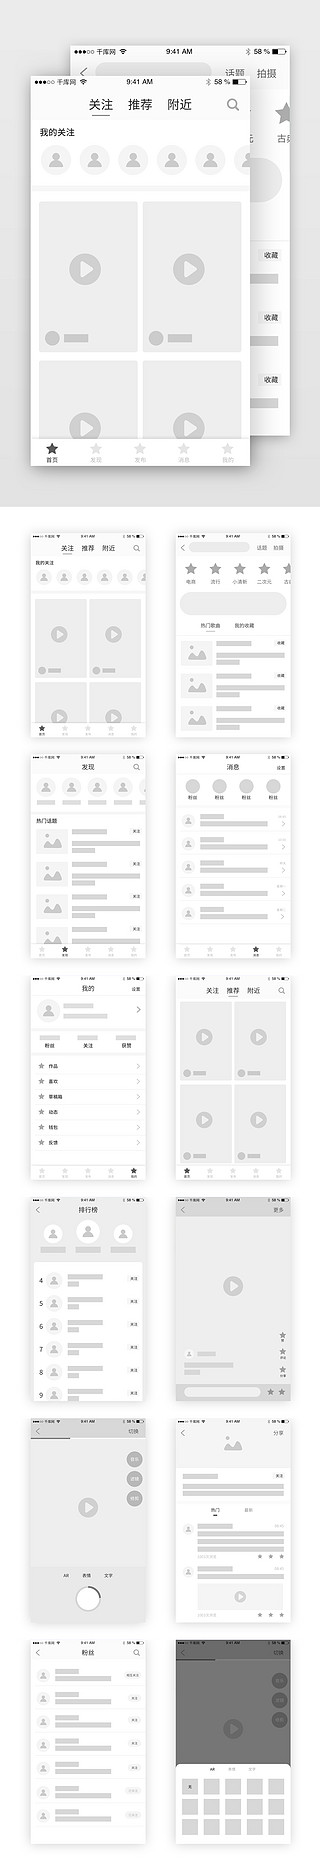 哥特风排版UI设计素材_短视频直播排版模板原型图